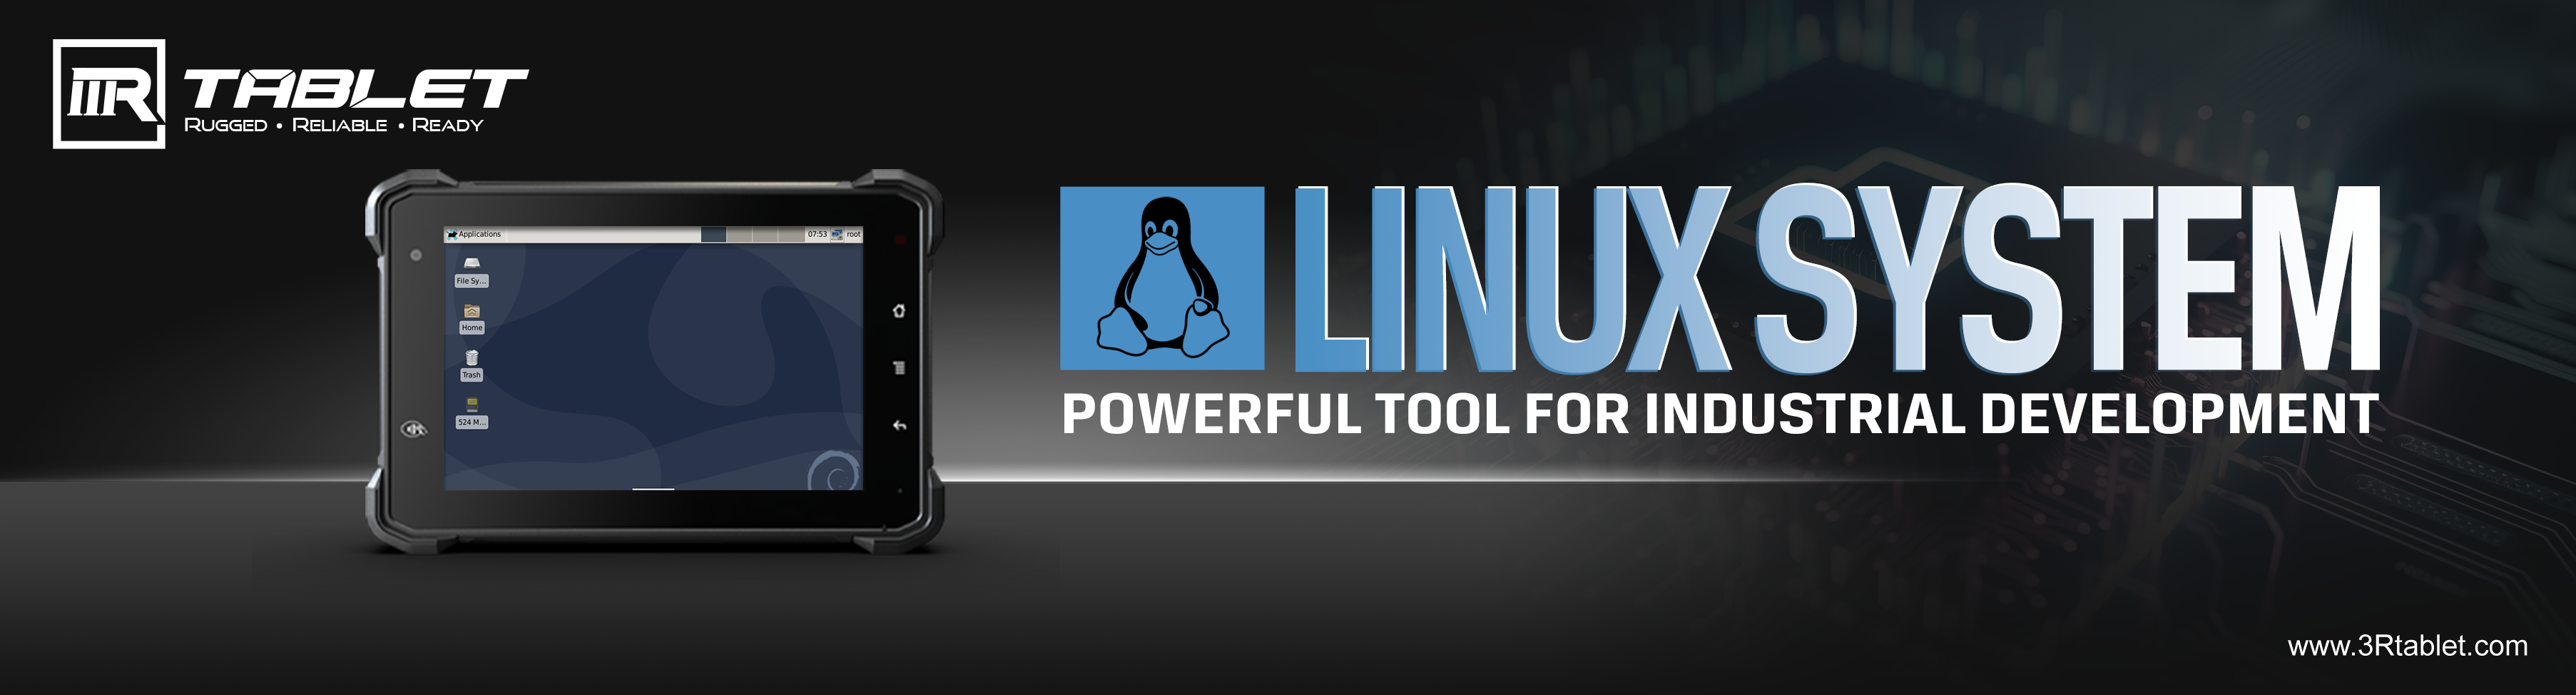 Sfruttate a putenza di e tavolette robuste Linux per l'applicazioni industriali: sbloccare un rendimentu è efficienza superiore